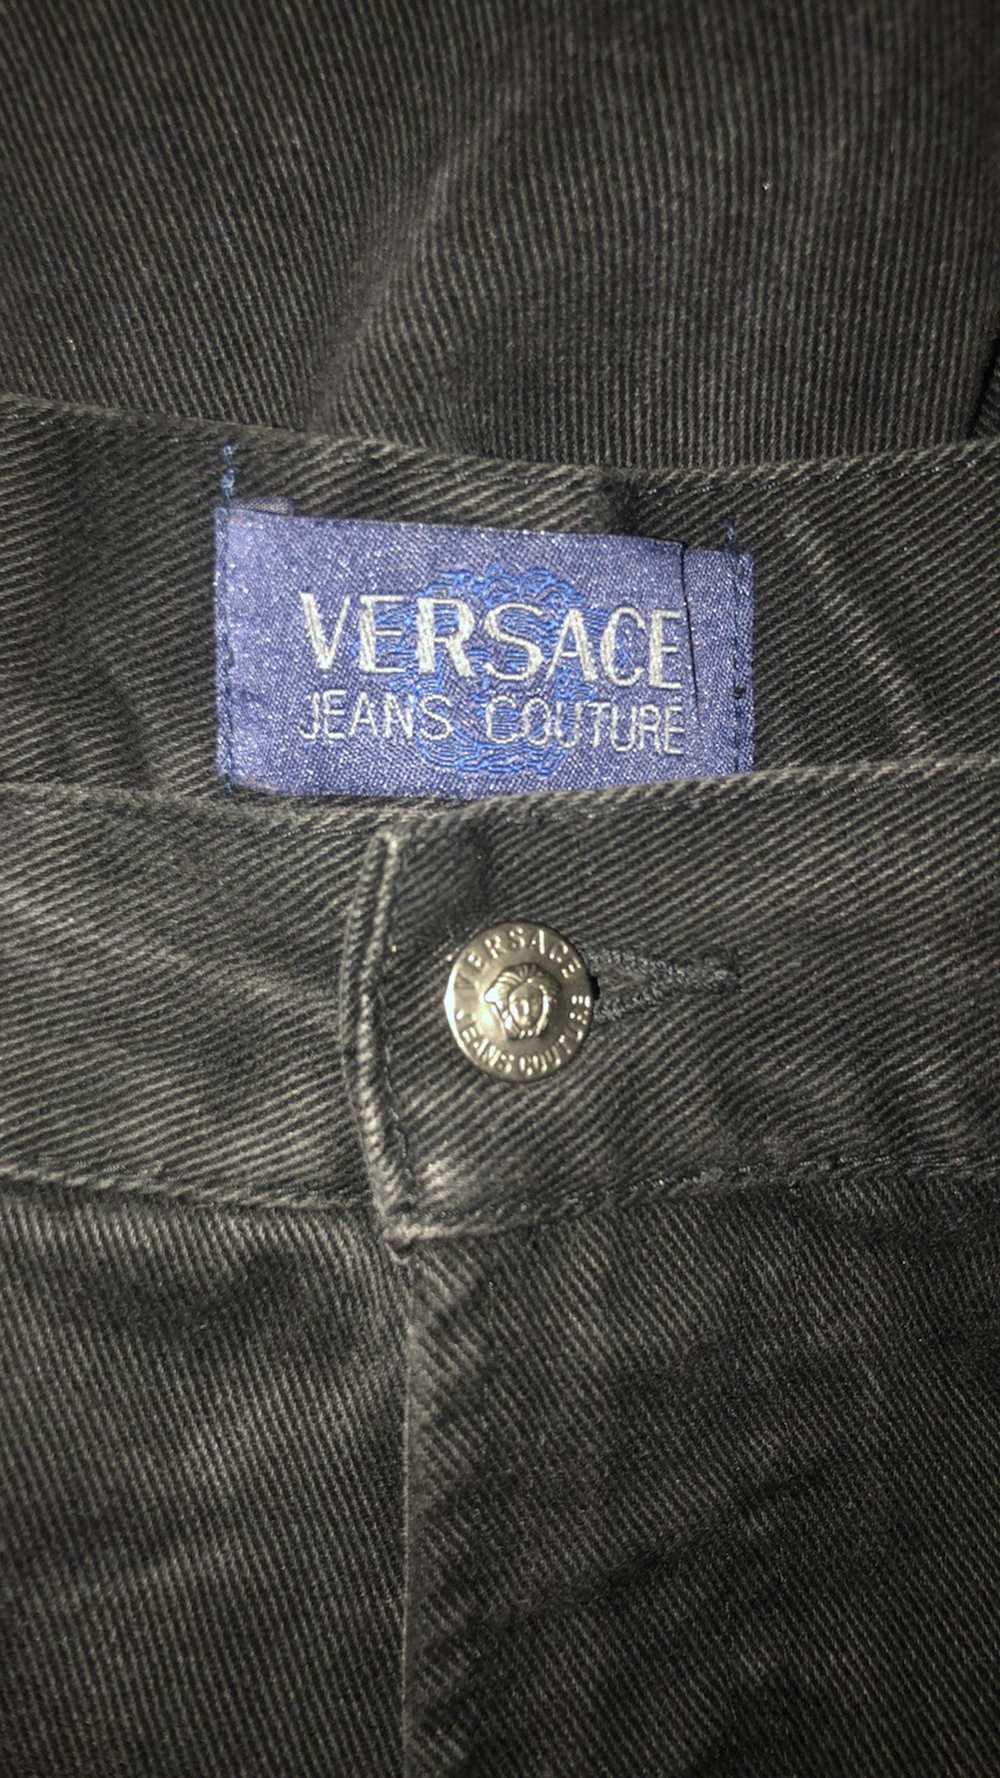 Versace Jeans Couture Versace Jeans couture - image 4